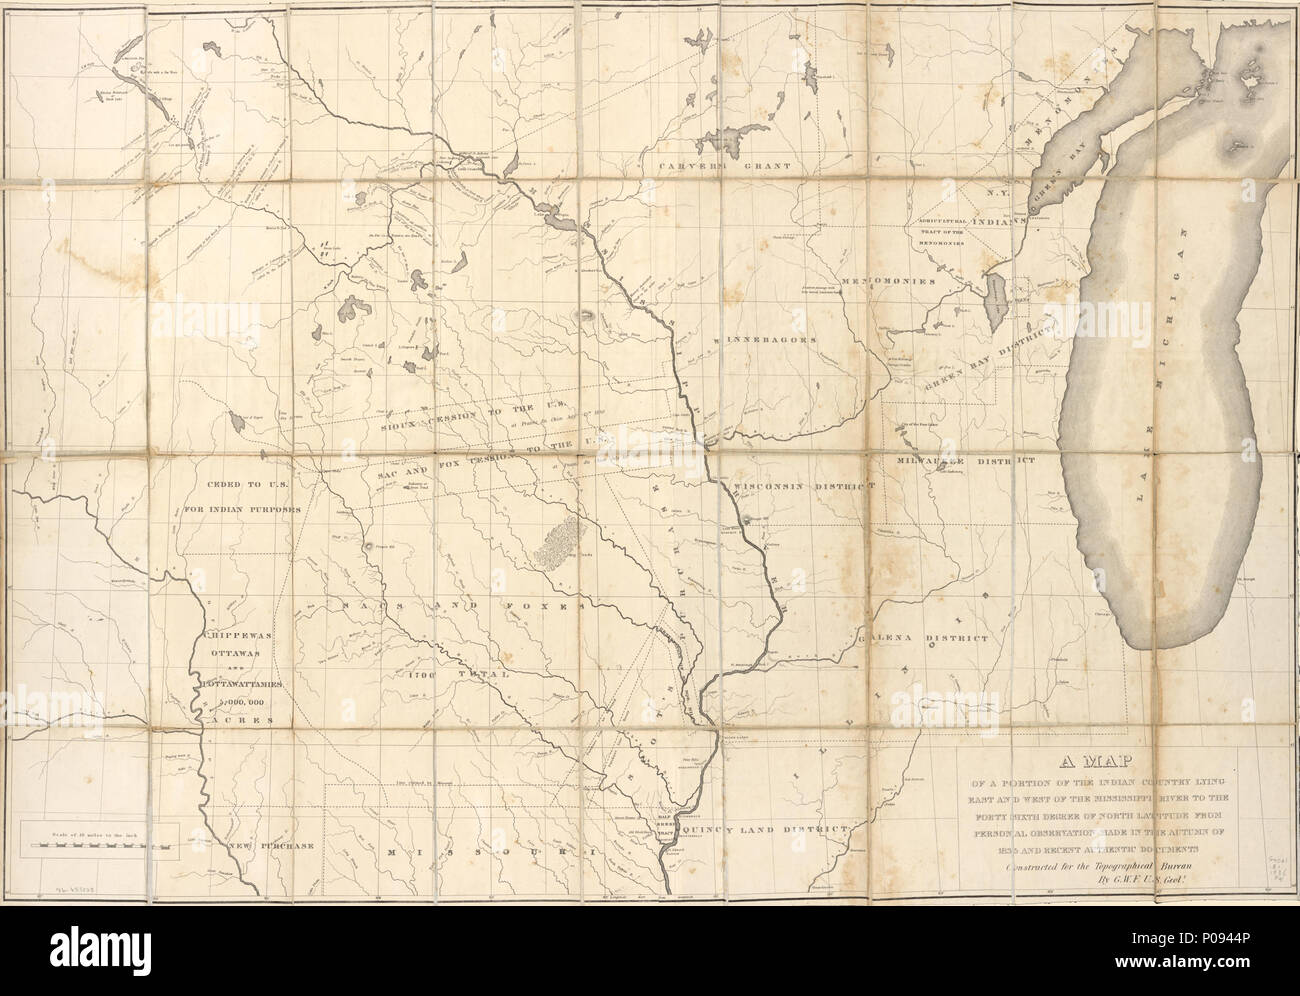 128 eine Karte von einem Teil der indischen Land östlich und westlich des Mississippi Flusses zu den 40 6. Grades nördlicher Breite aus persönlicher Beobachtung im Herbst 1835 hergestellt und die jüngsten LOC 96683128 Stockfoto